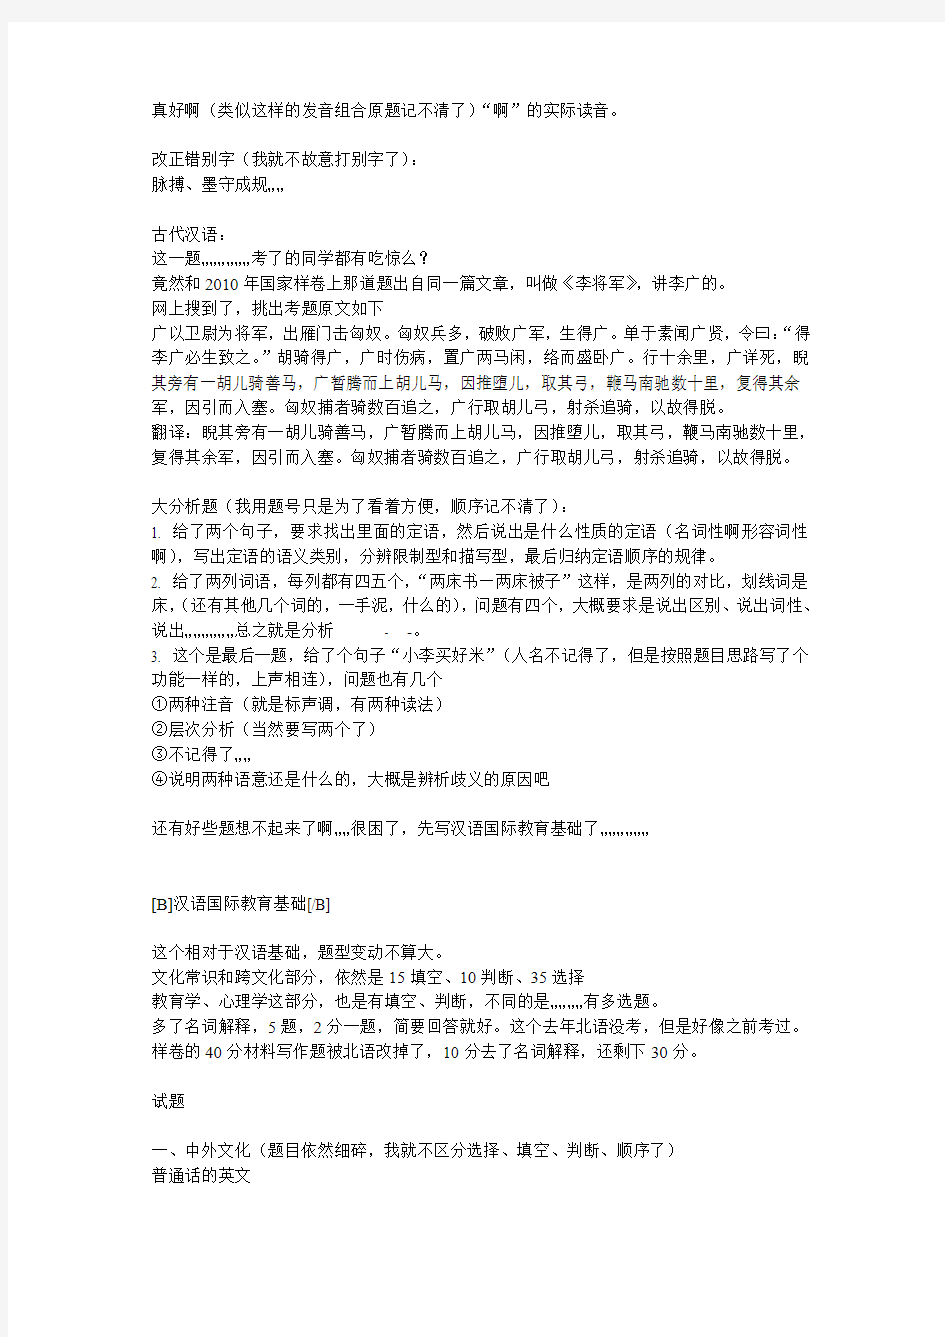 2012北语汉语国际教育初试回忆版(转载)